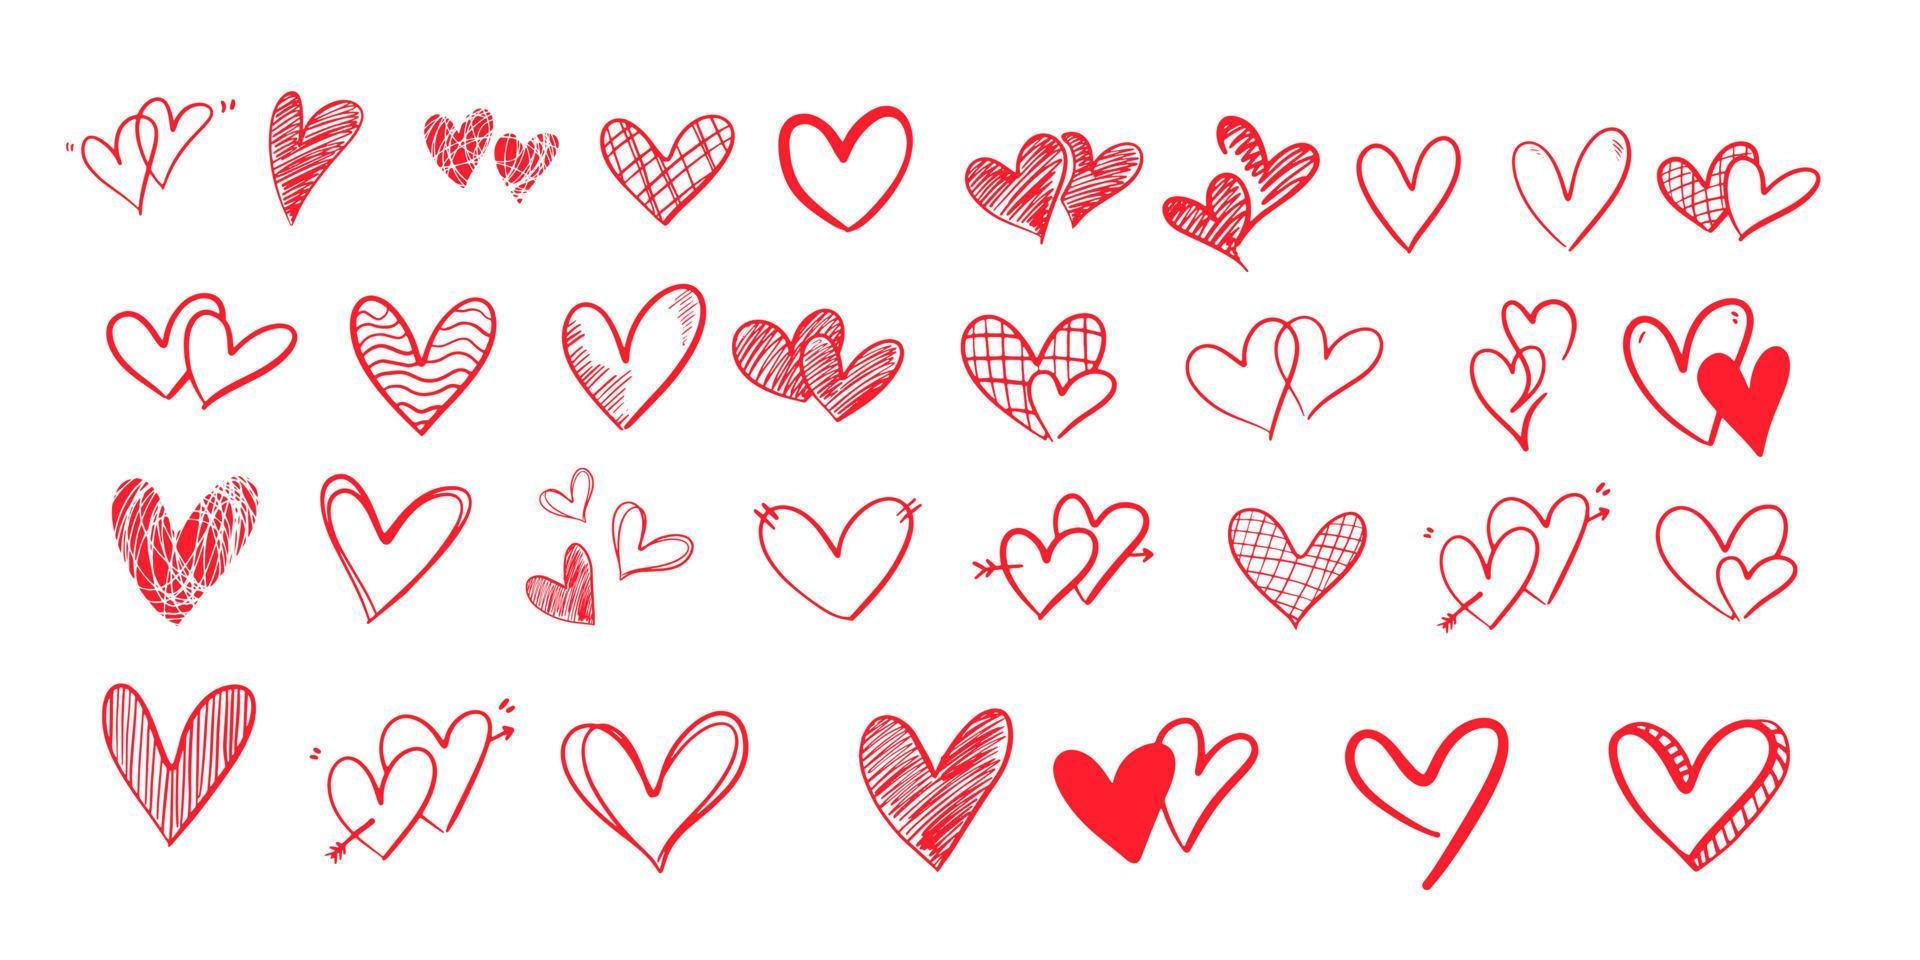 garabato de corazón para el día de san valentín. bosquejo del conjunto gráfico de símbolo de icono de corazón rojo. vector de elemento de corazón dibujado a mano